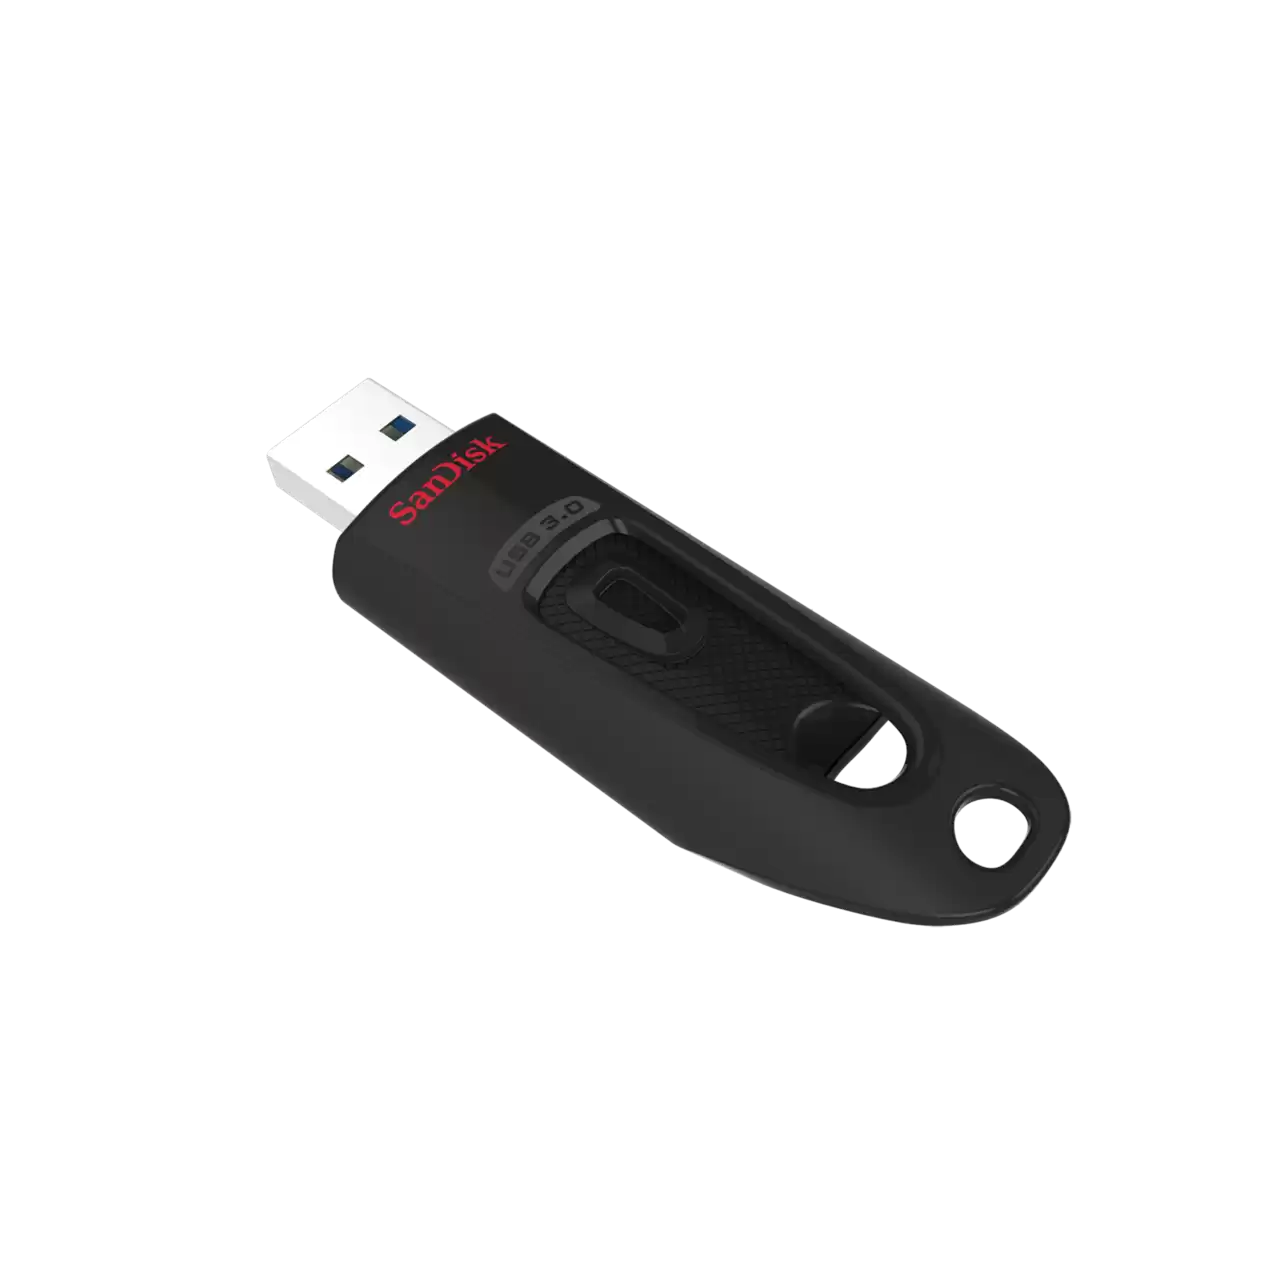 Sandisk Ultra USB 3.0 Flash Drive 64GB